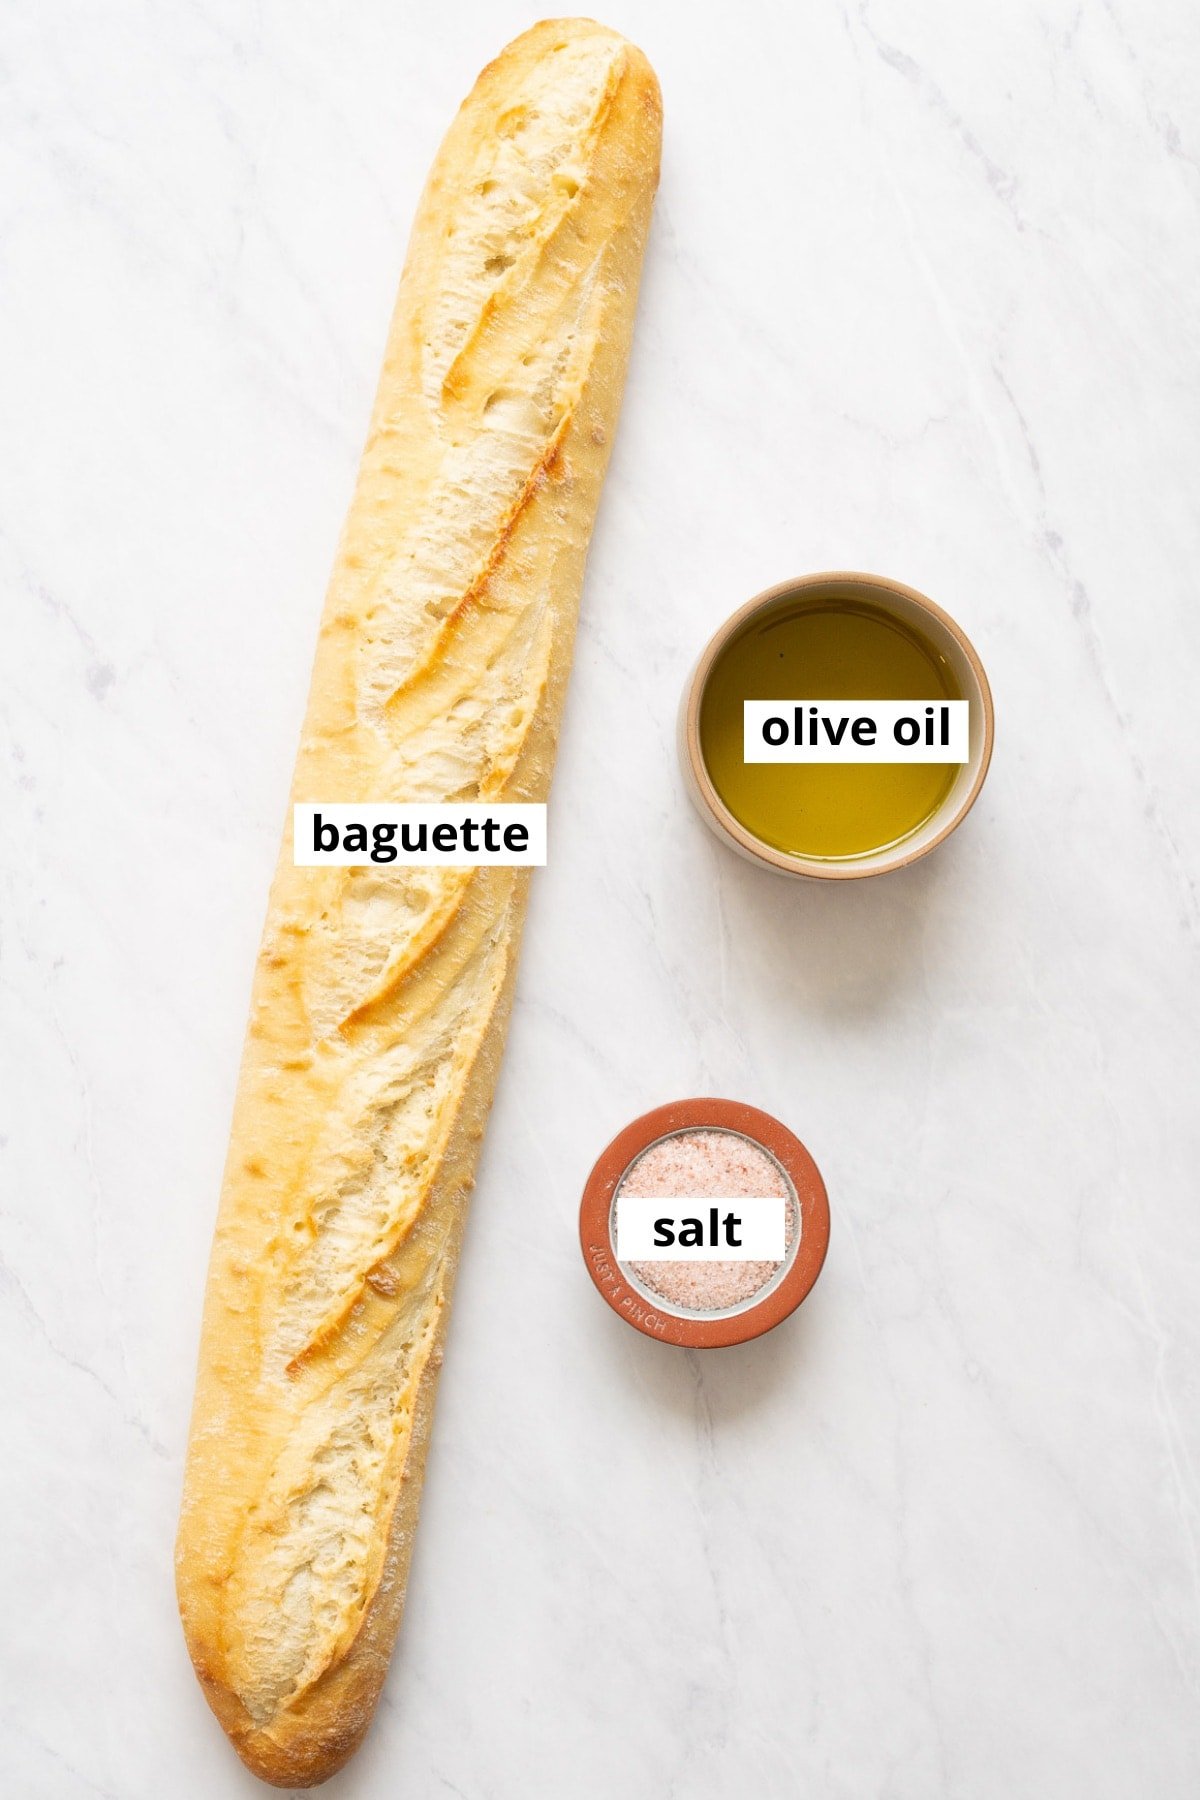 Baguette, olive oil, salt.